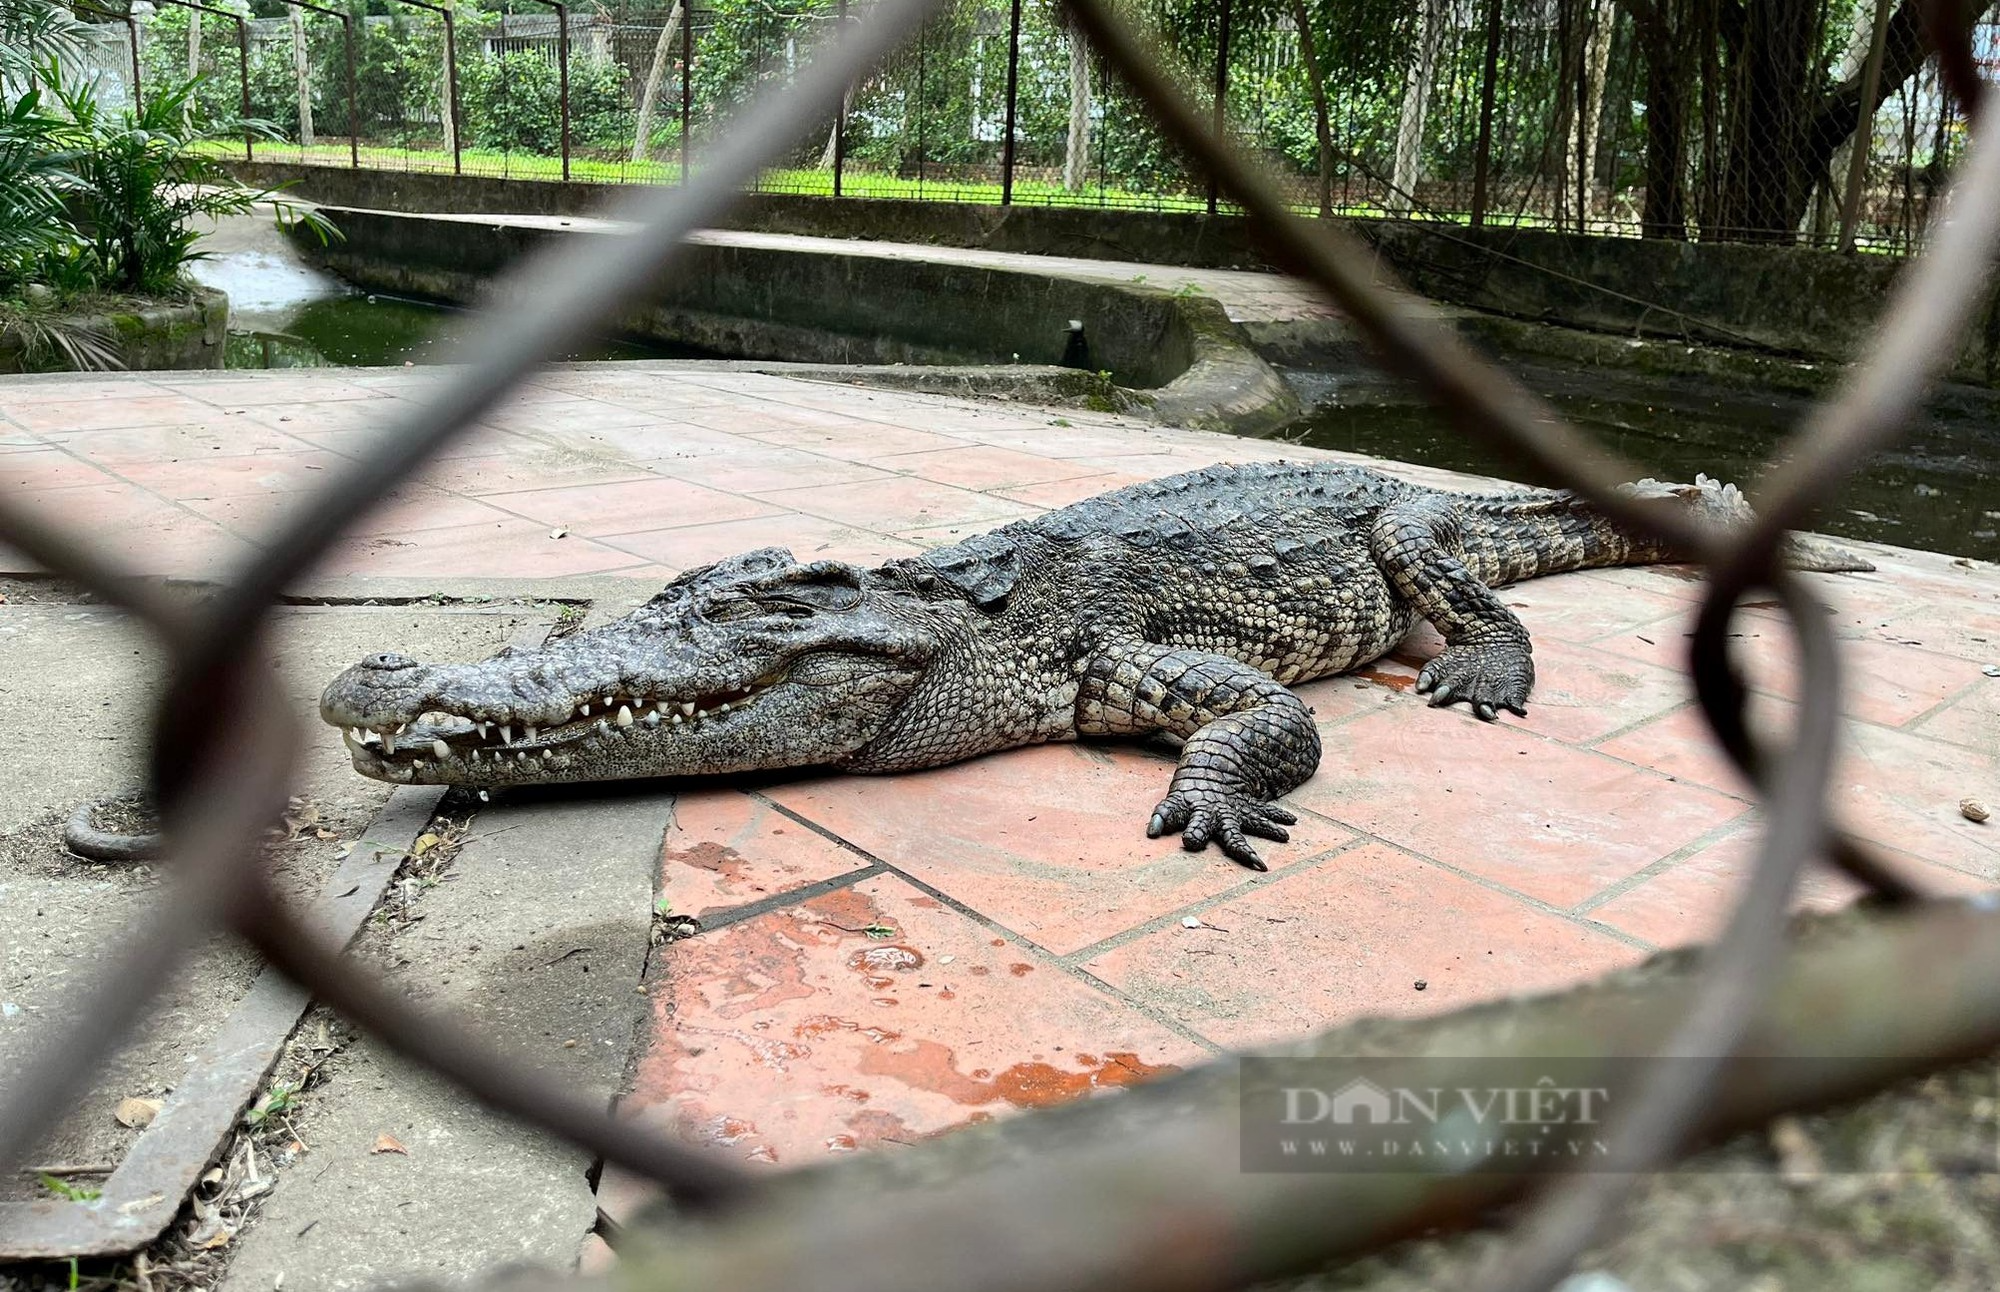 Nghệ An: Clip: Cận cảnh đàn cá sấu tại công viên lớn nhất thành phố Vinh - Ảnh 5.